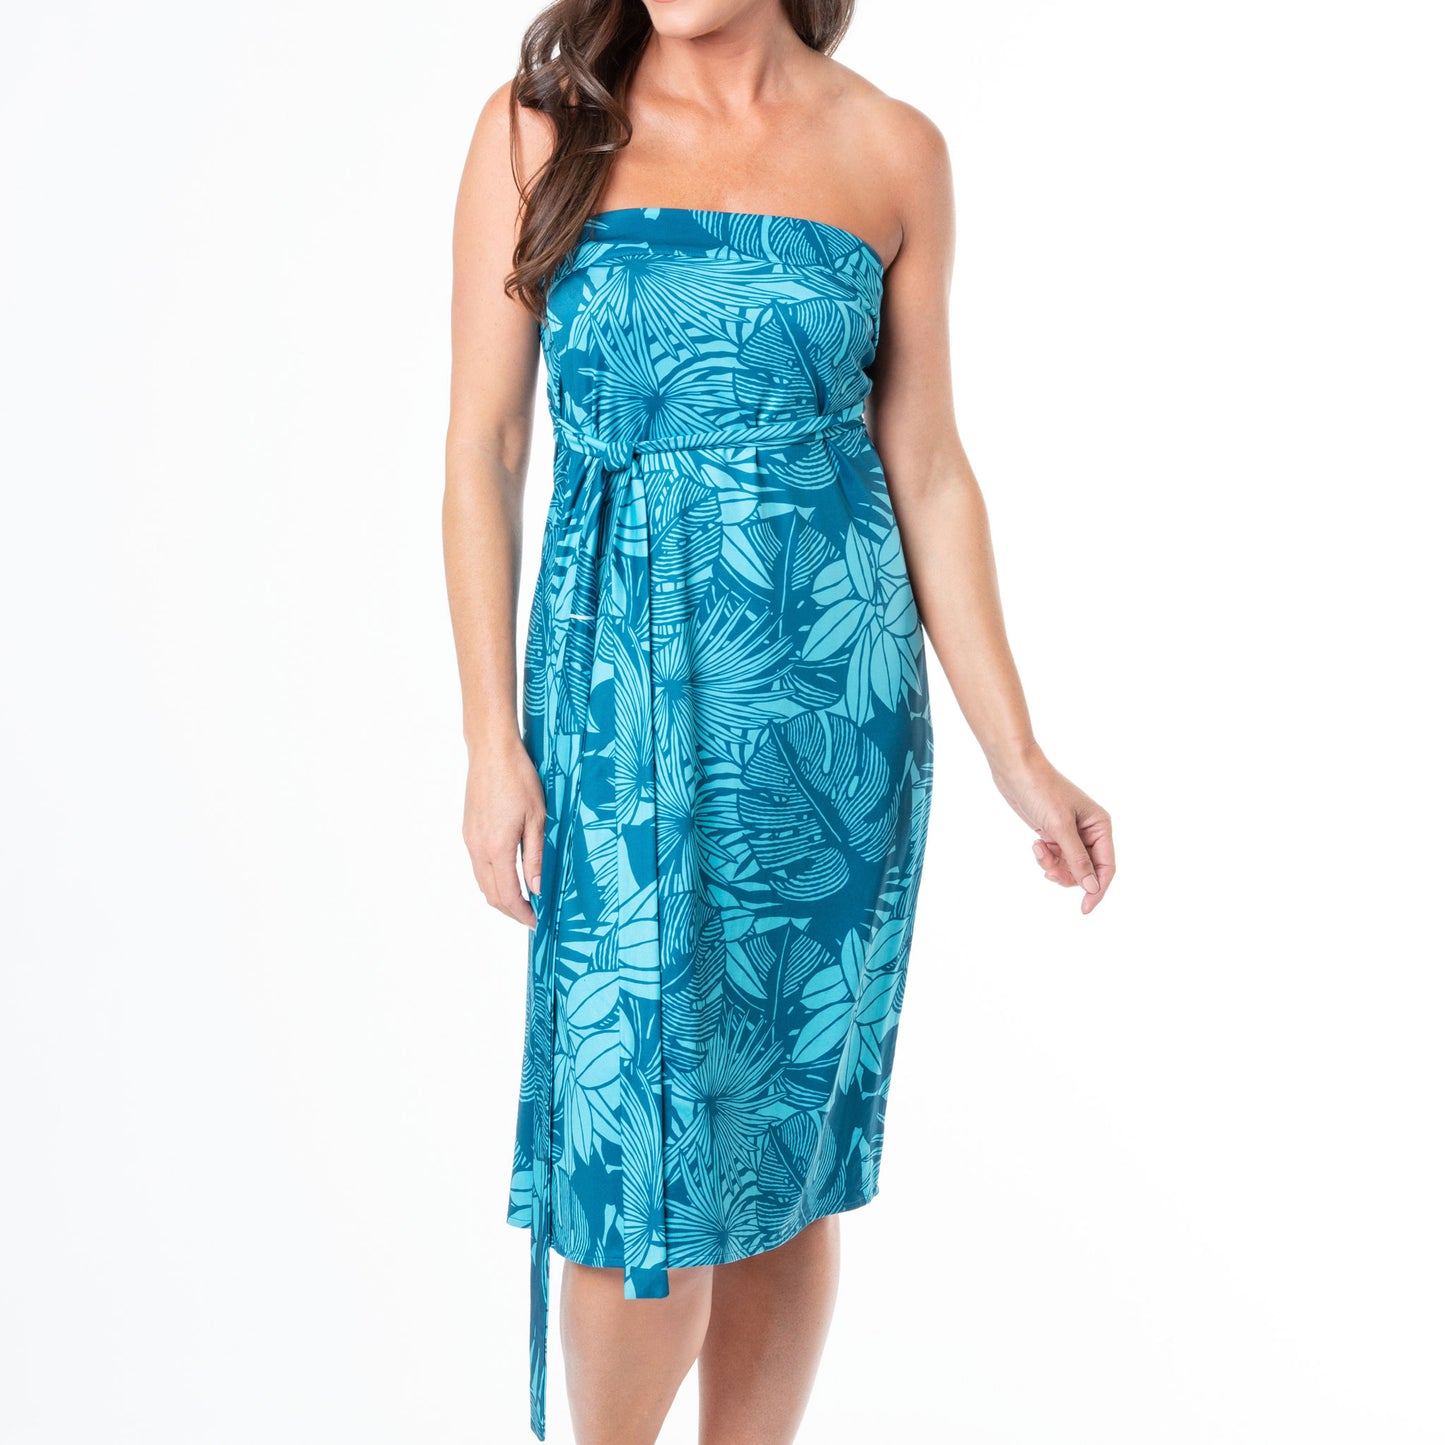 Bella 4-In-1 Reversible Wrap Dress & Skirt